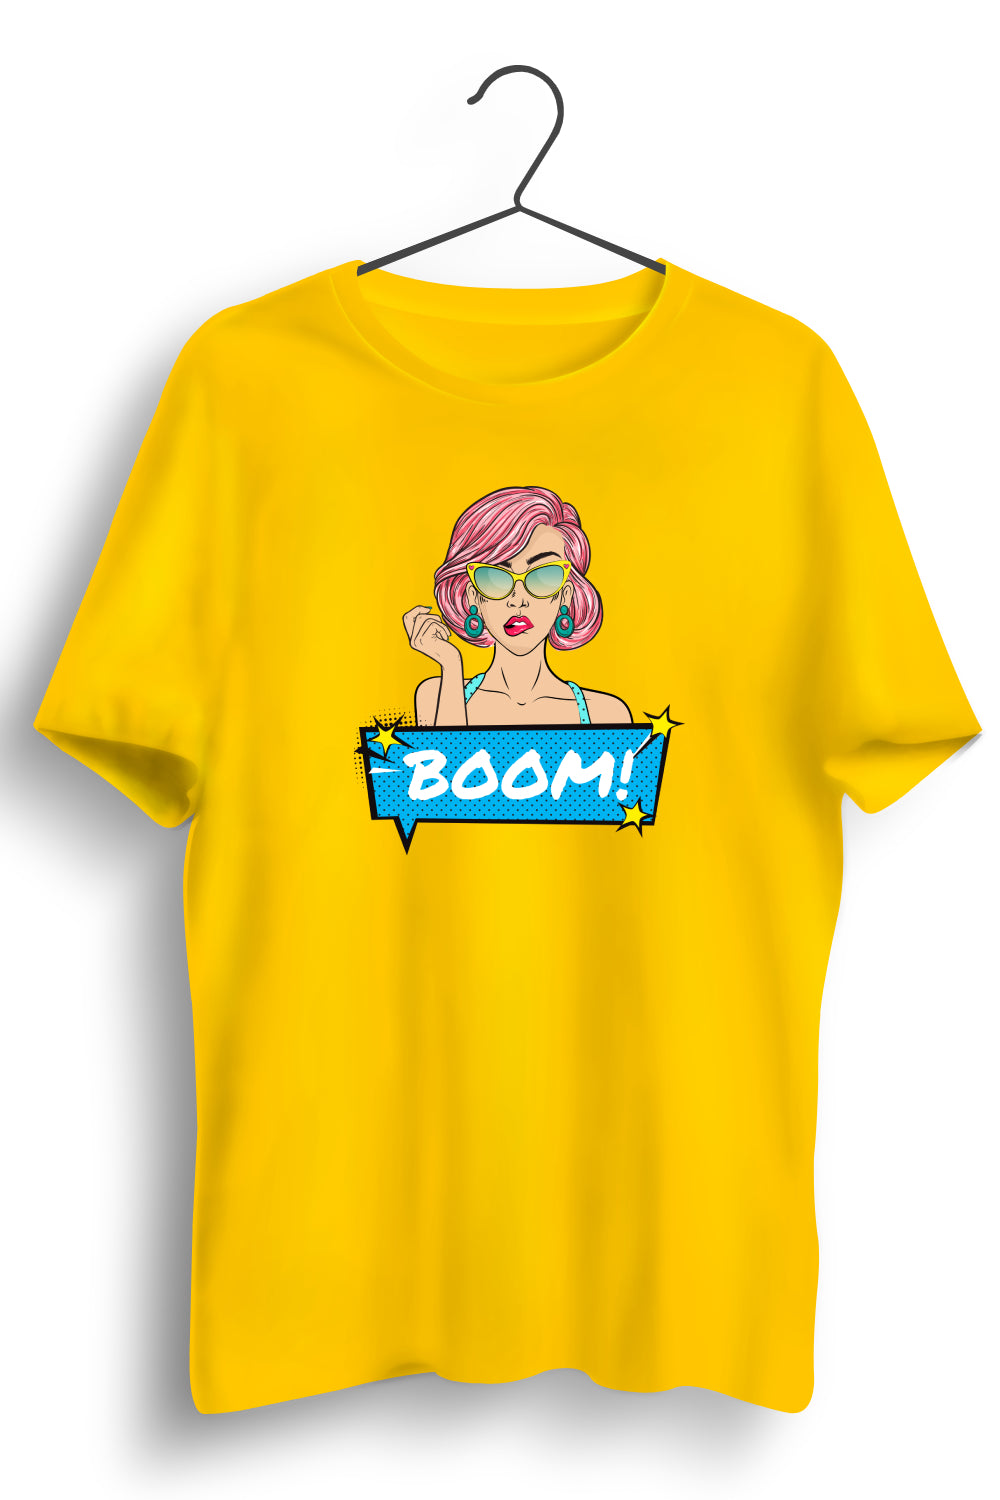 Boom Graphic Printed Yellow Tshirt